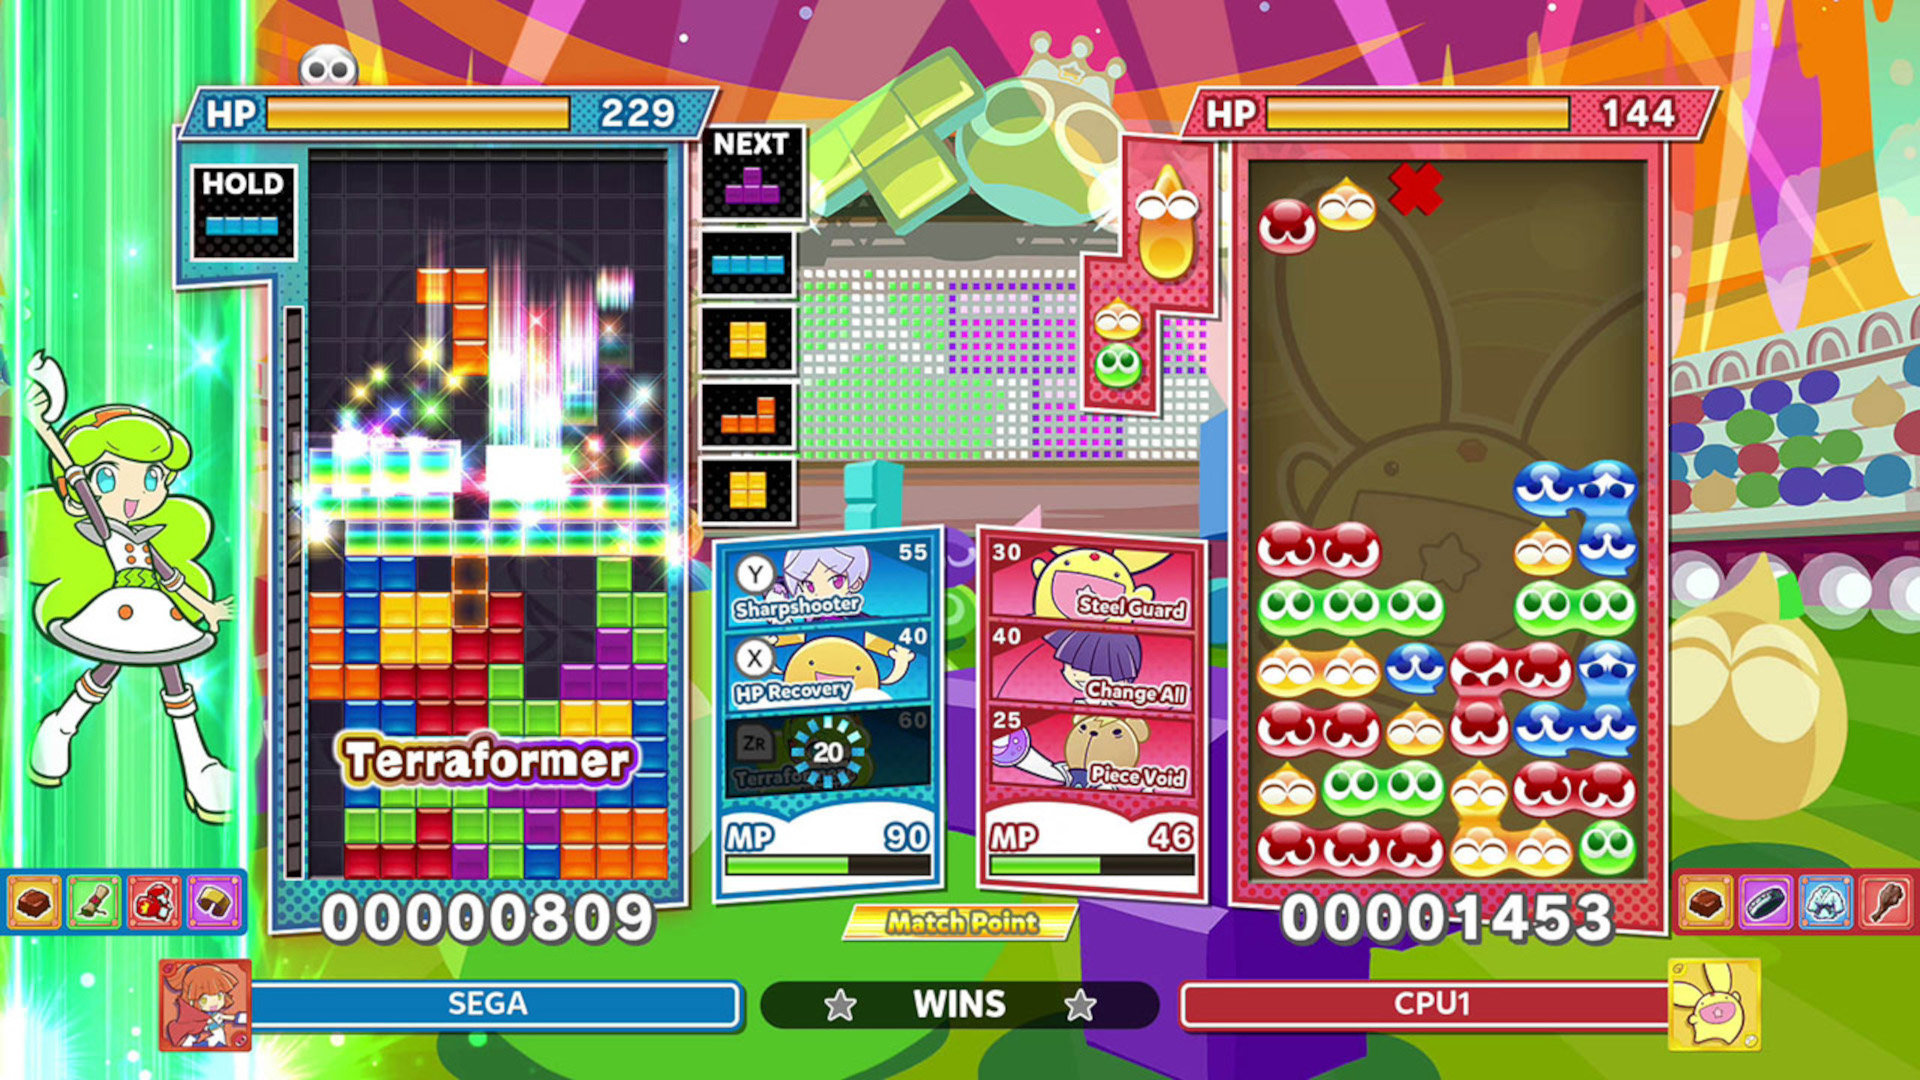 Puyo Puyo Tetris 2 gameplay